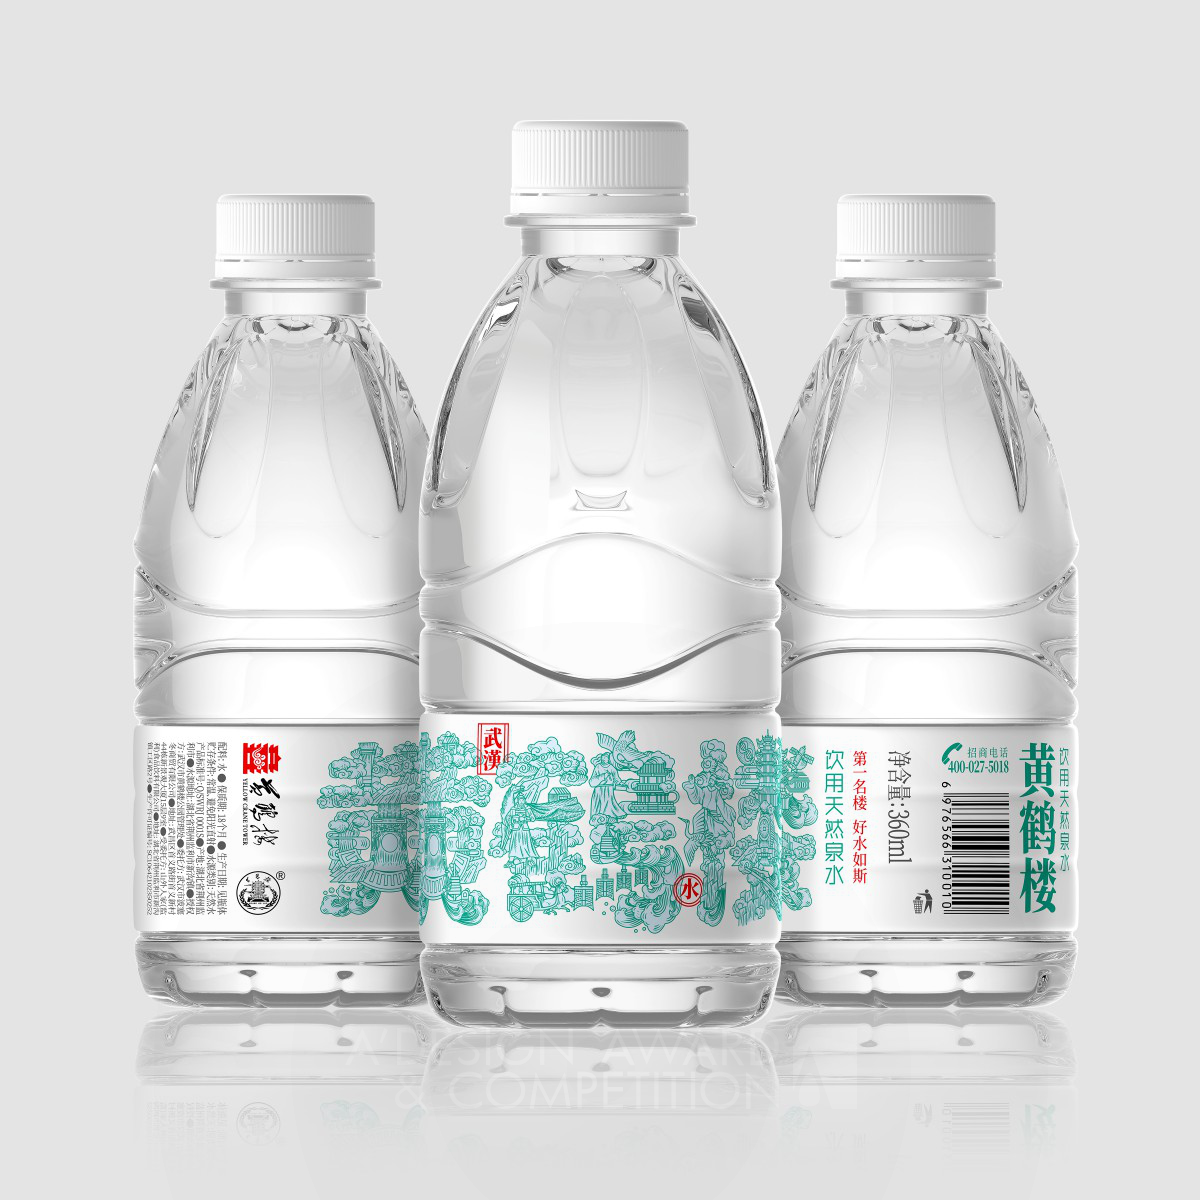  Water Packaging